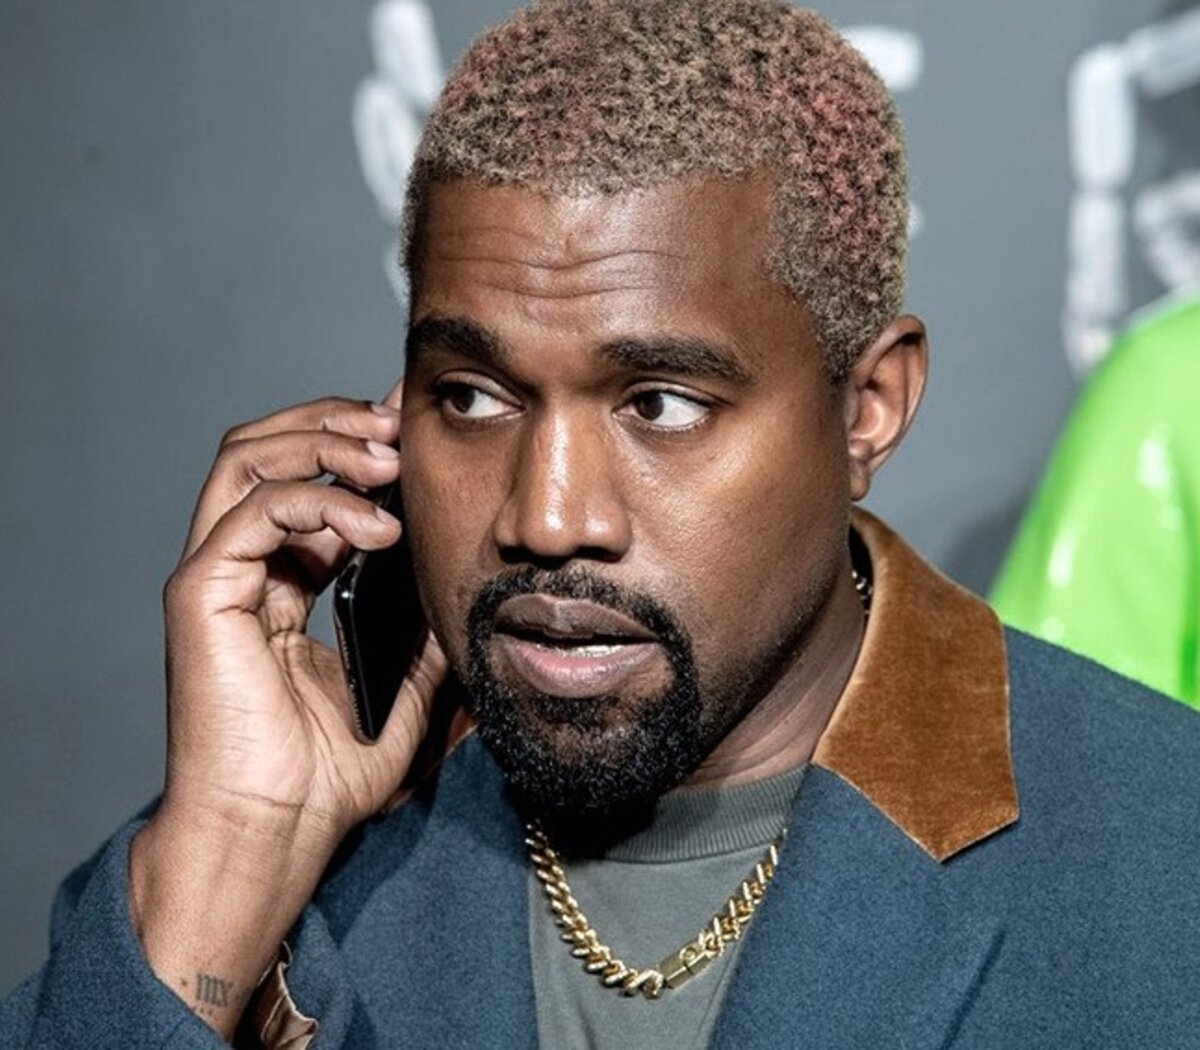 Adidas rompió su contrato con el rapero Kanye West tras sus declaraciones antisemitas | En redes y un podcast | Página12